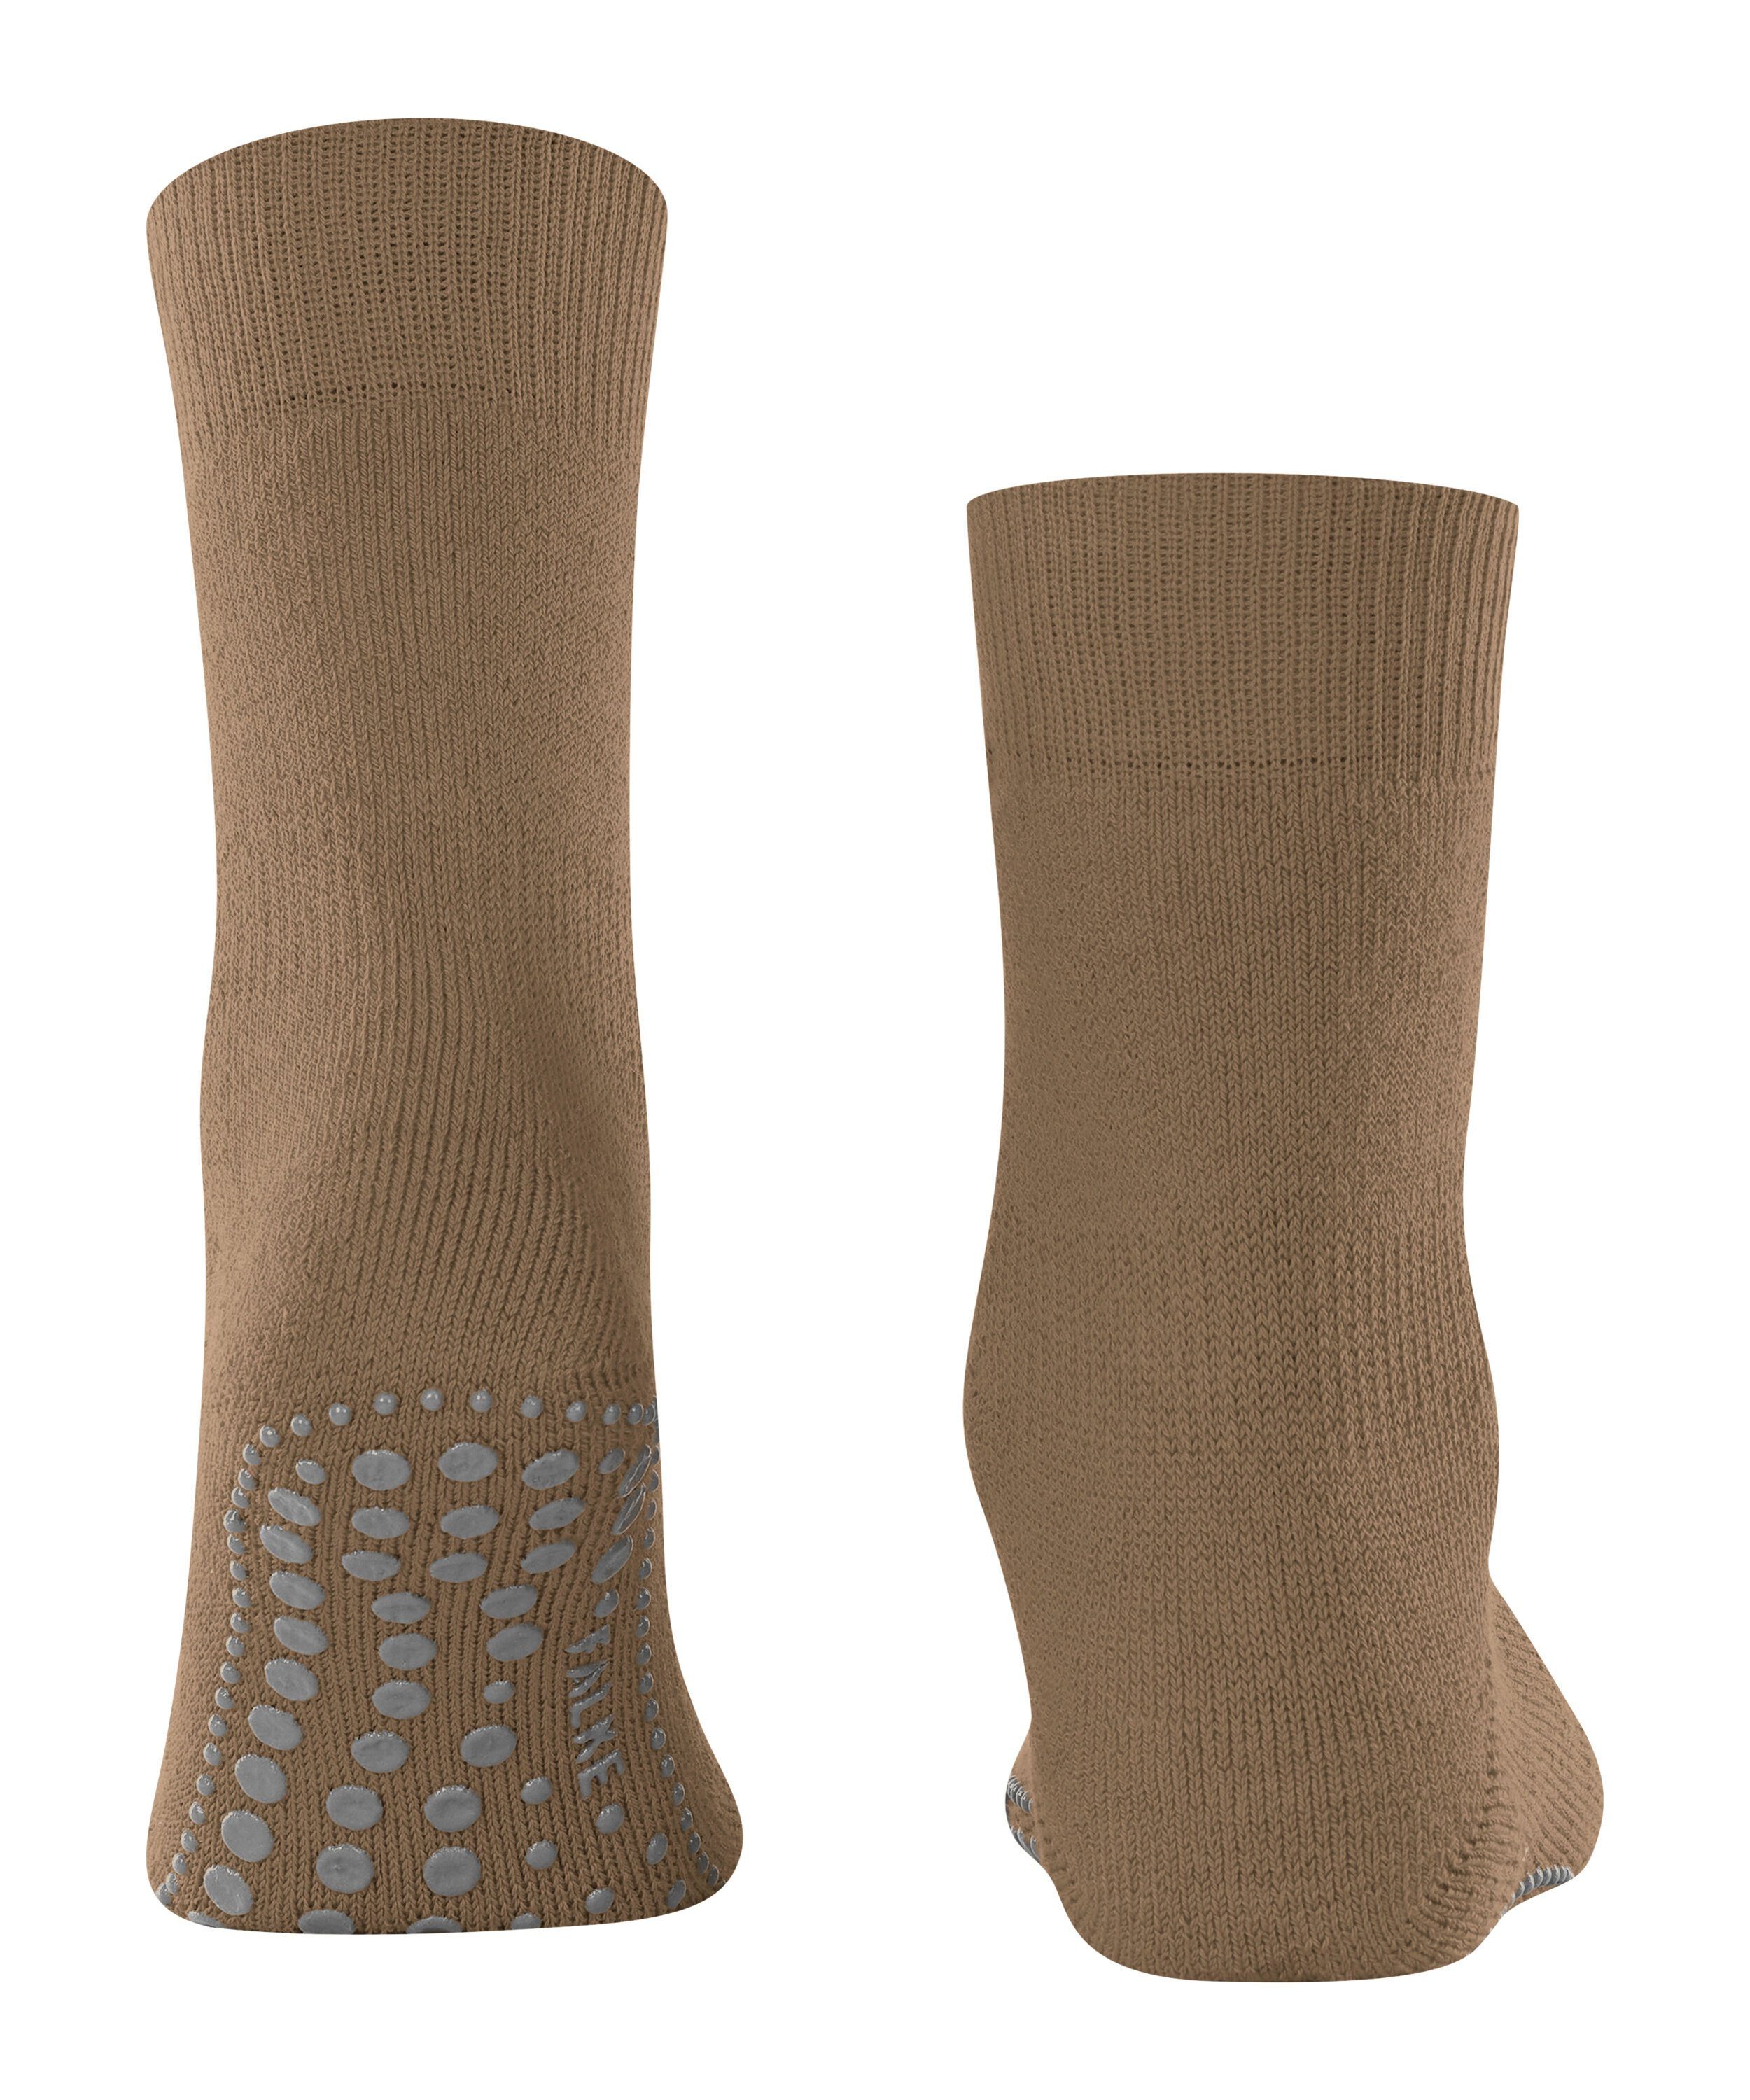 (1-Paar) Homepads wholegrain (5017) FALKE Socken